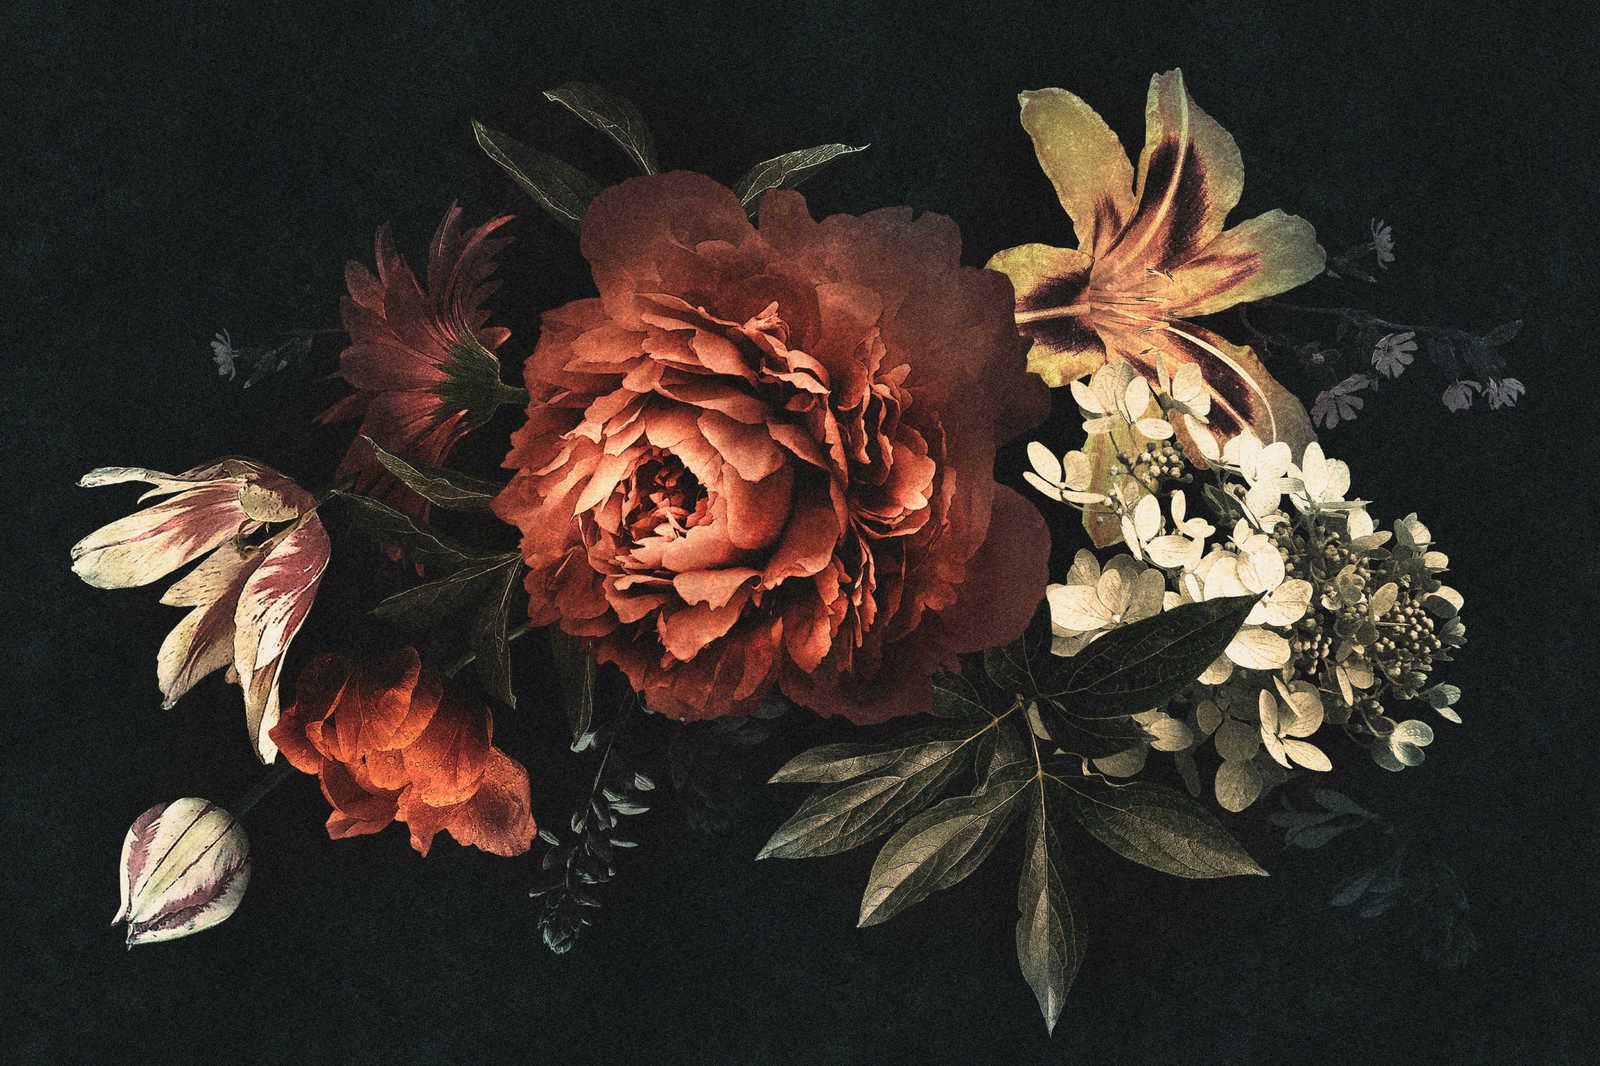             Drama queen 1 - Blumenstrauß Leinwandbild mit dunklem Hintergrund – 1,20 m x 0,80 m
        